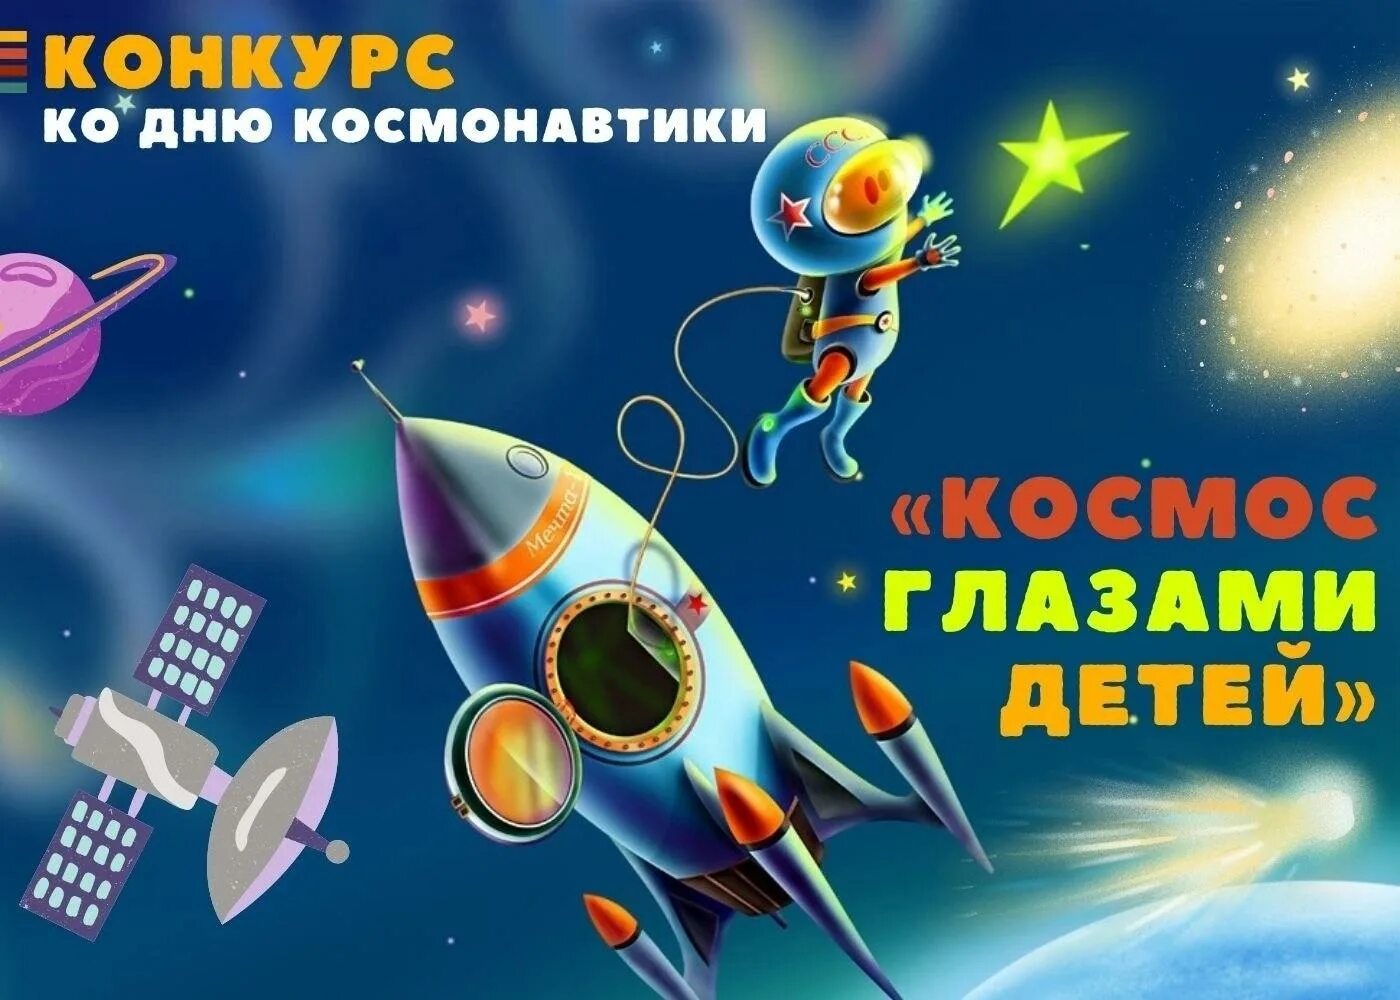 Познавательная программа ко дню космонавтики. Плакат космос для детей. Конкурс ко Дню космонавтики. Космос картинки для детей. Конкурс космос глазами детей.